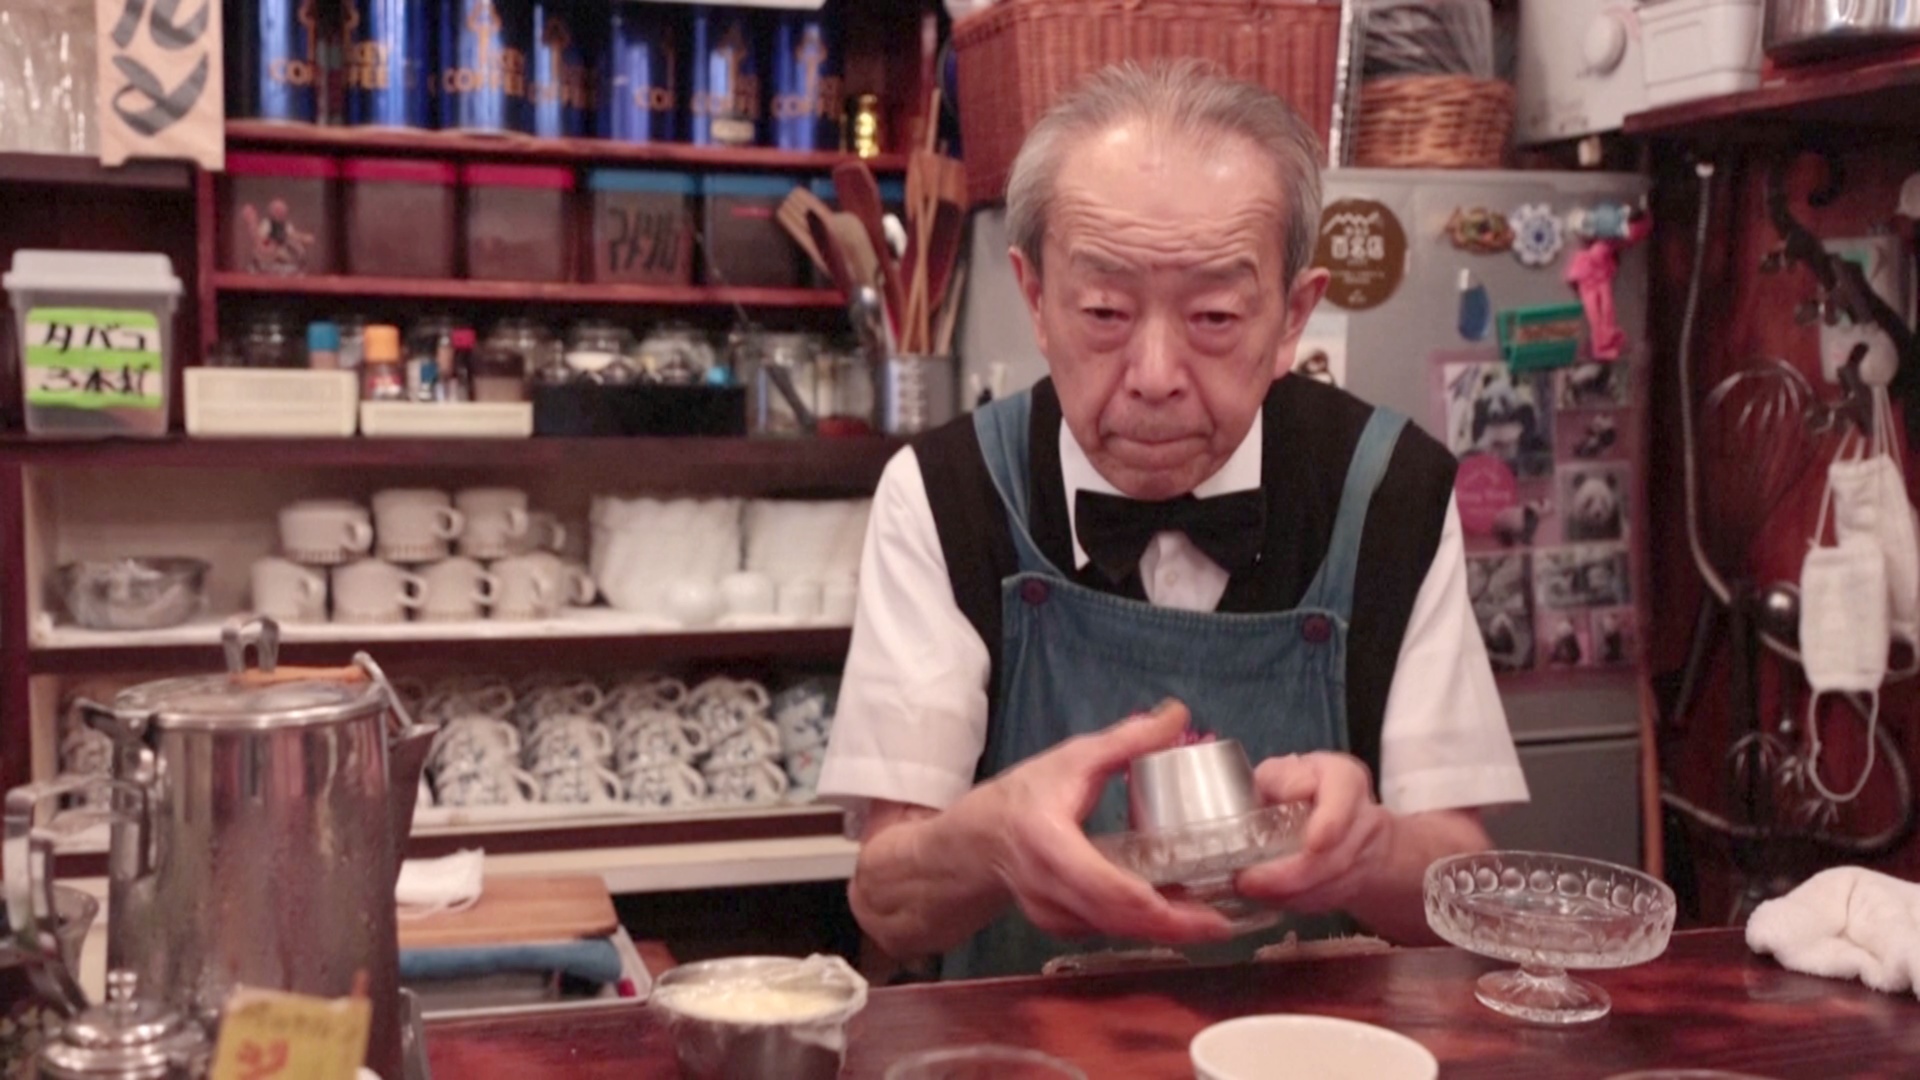 Пудинг с танцами: 80-летний японец и его кафе прославились в соцсетях